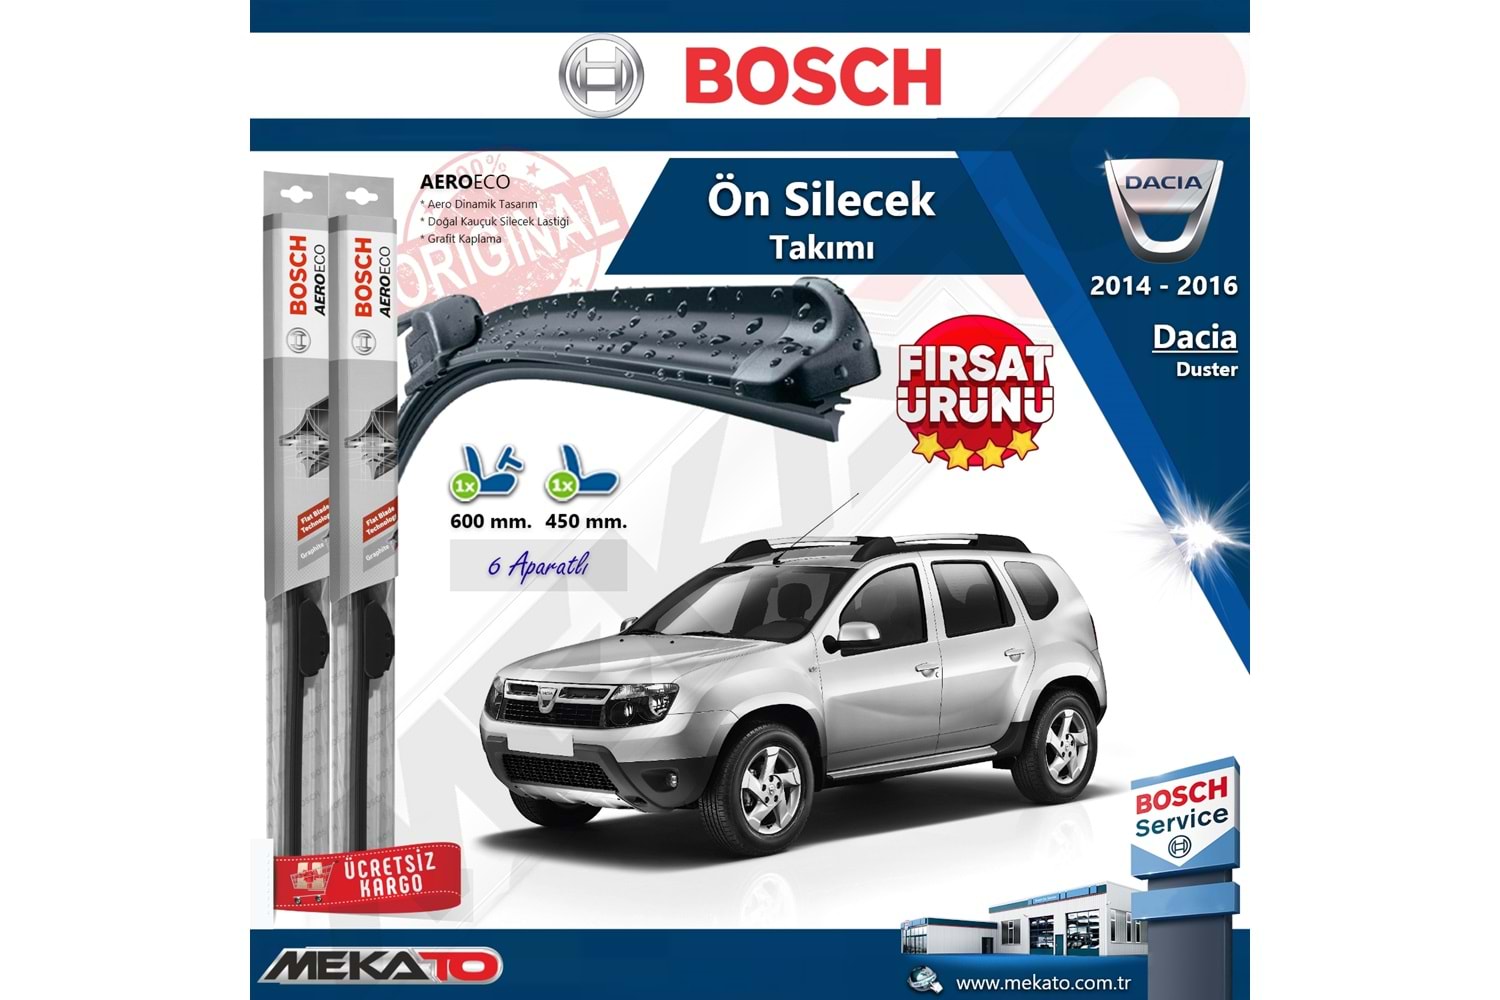 Dacia Duster Ön Silecek Takımı Bosch Aero Eco 2014-2016